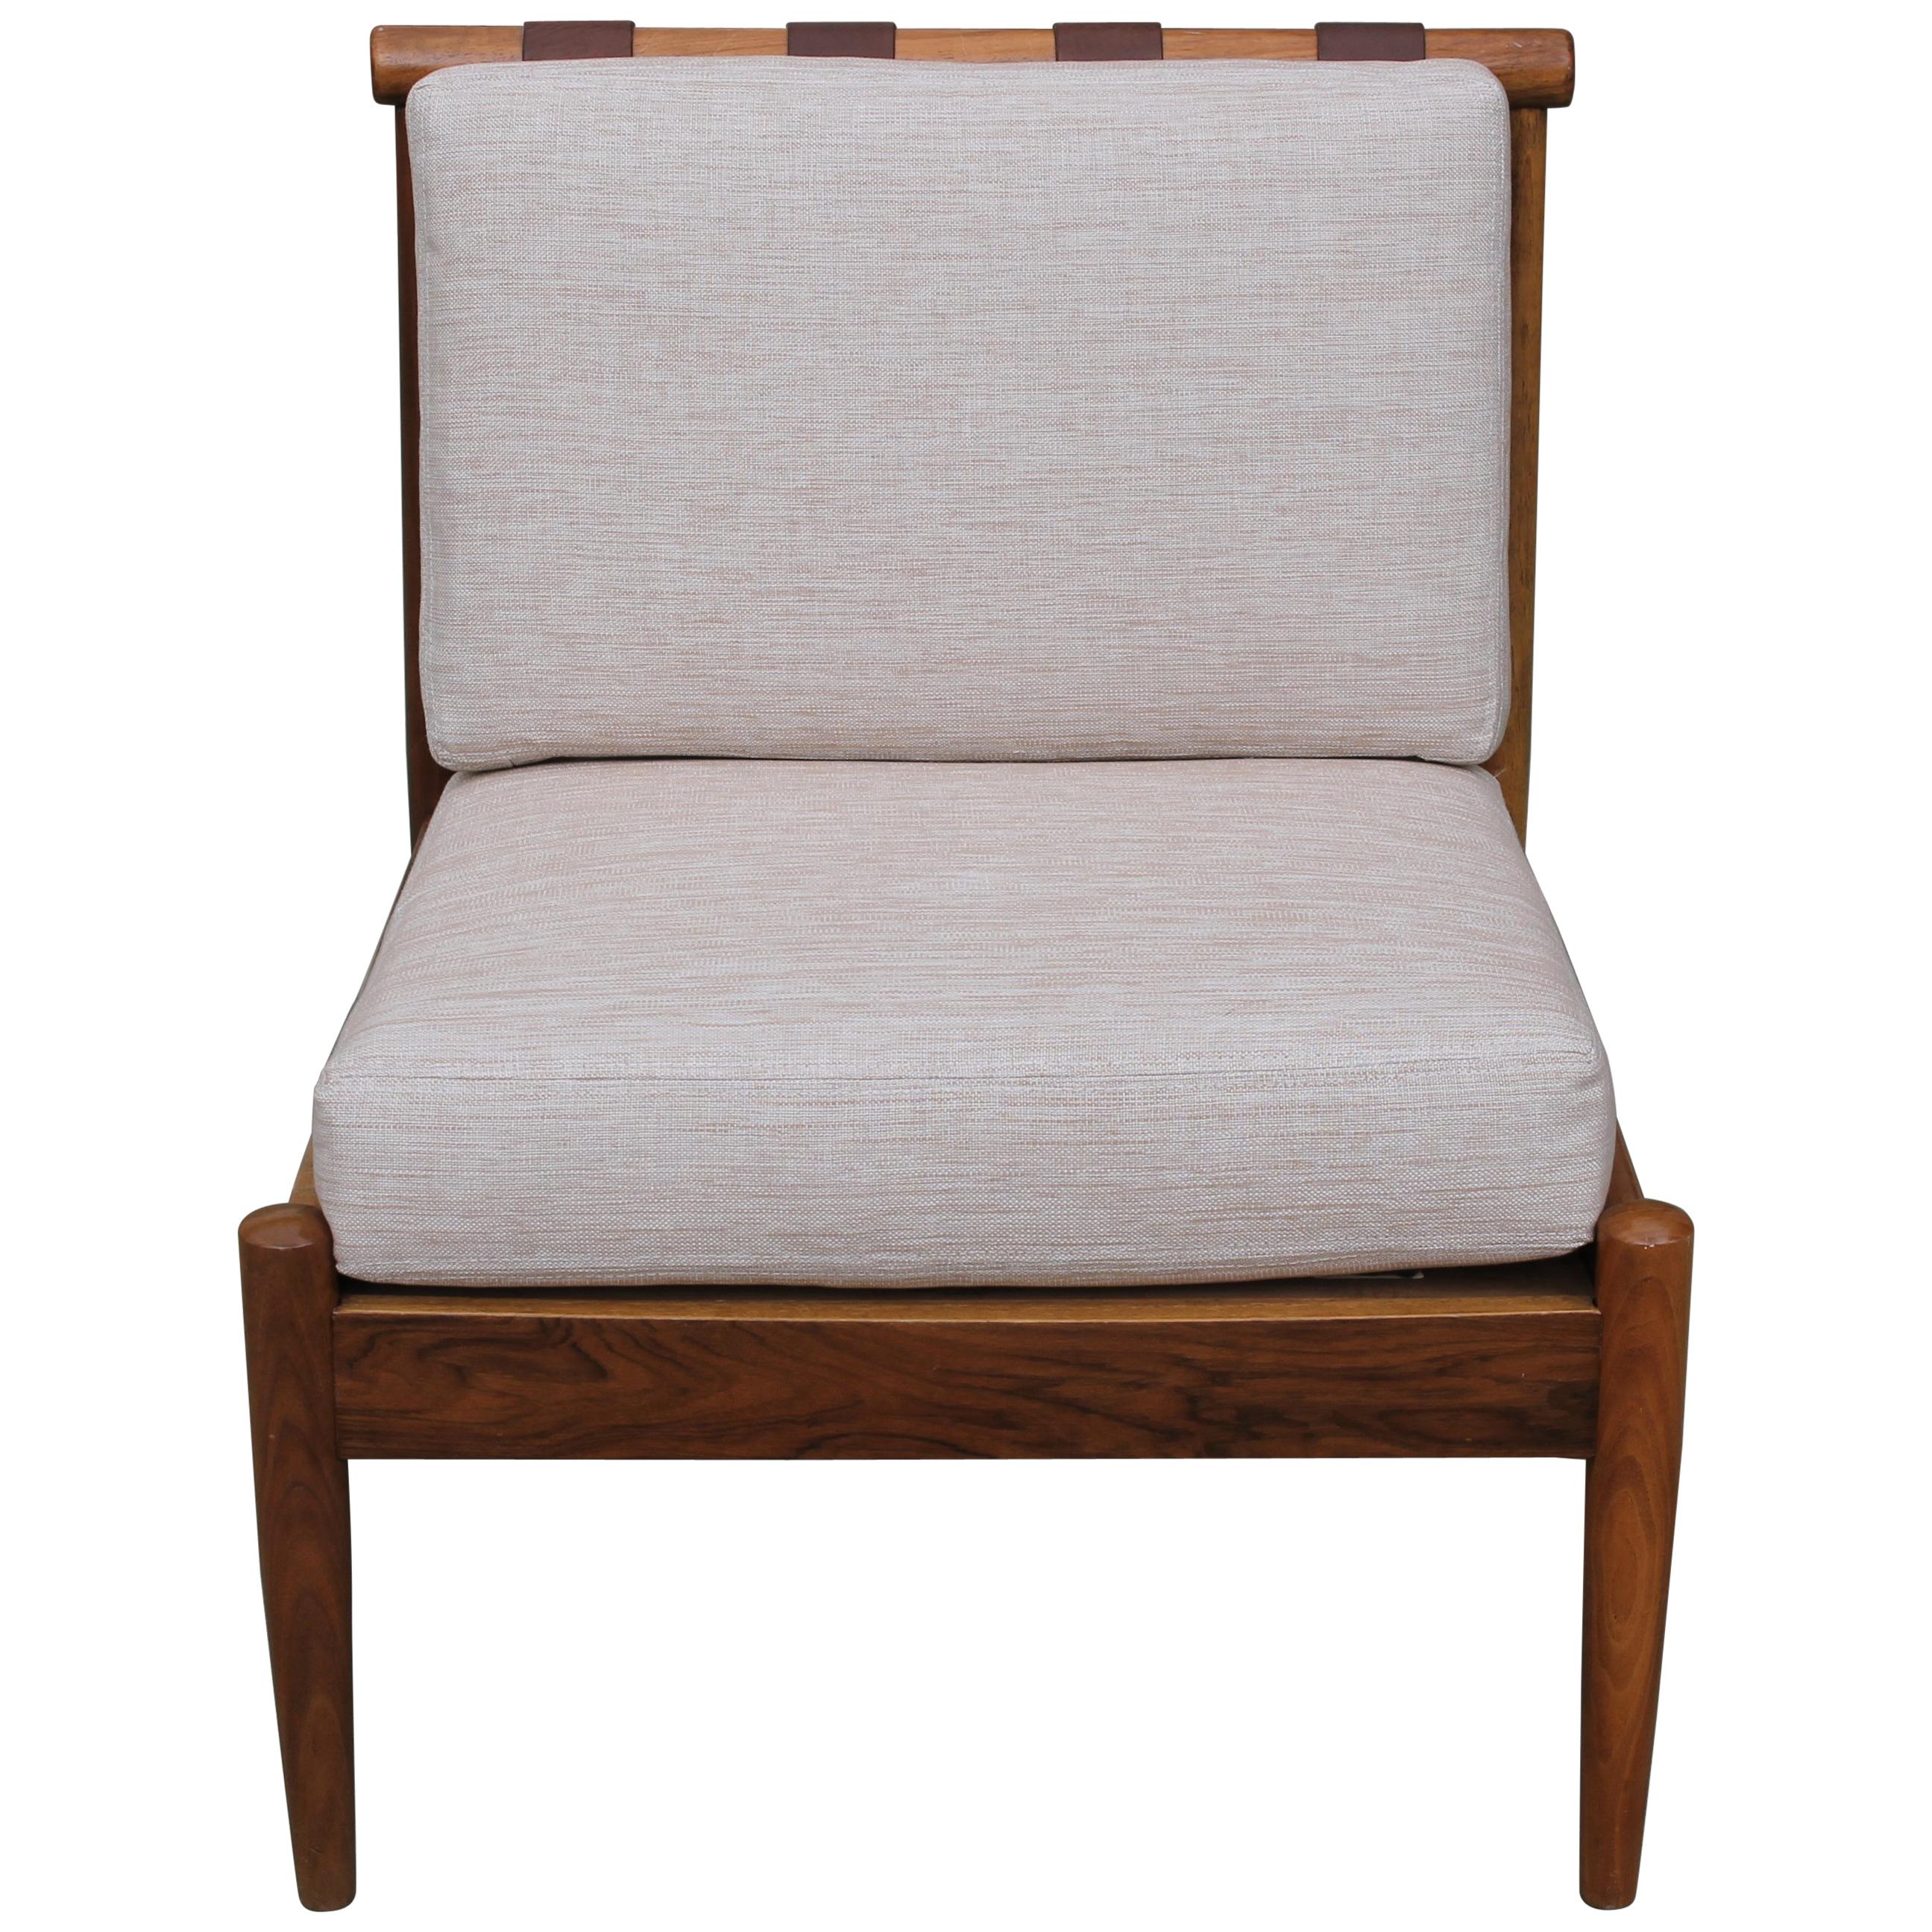 Danish Chair Designed by Hans C. Andersen